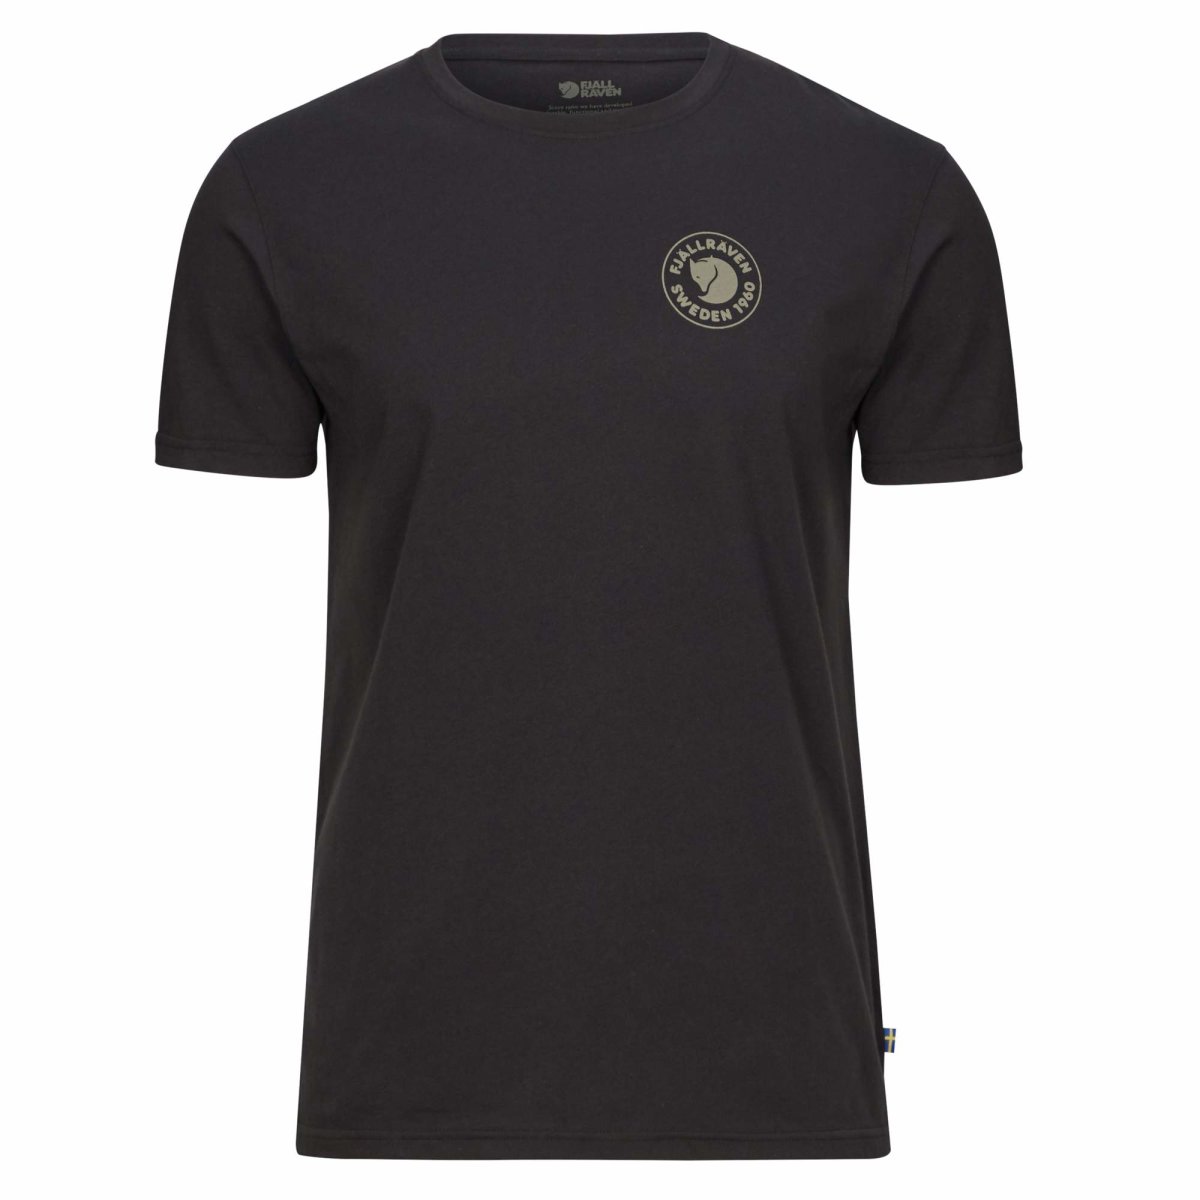 Fj&auml;llr&auml;ven 1960 Logo T-Shirt 87313 black Herren Jersey Brand Shirt